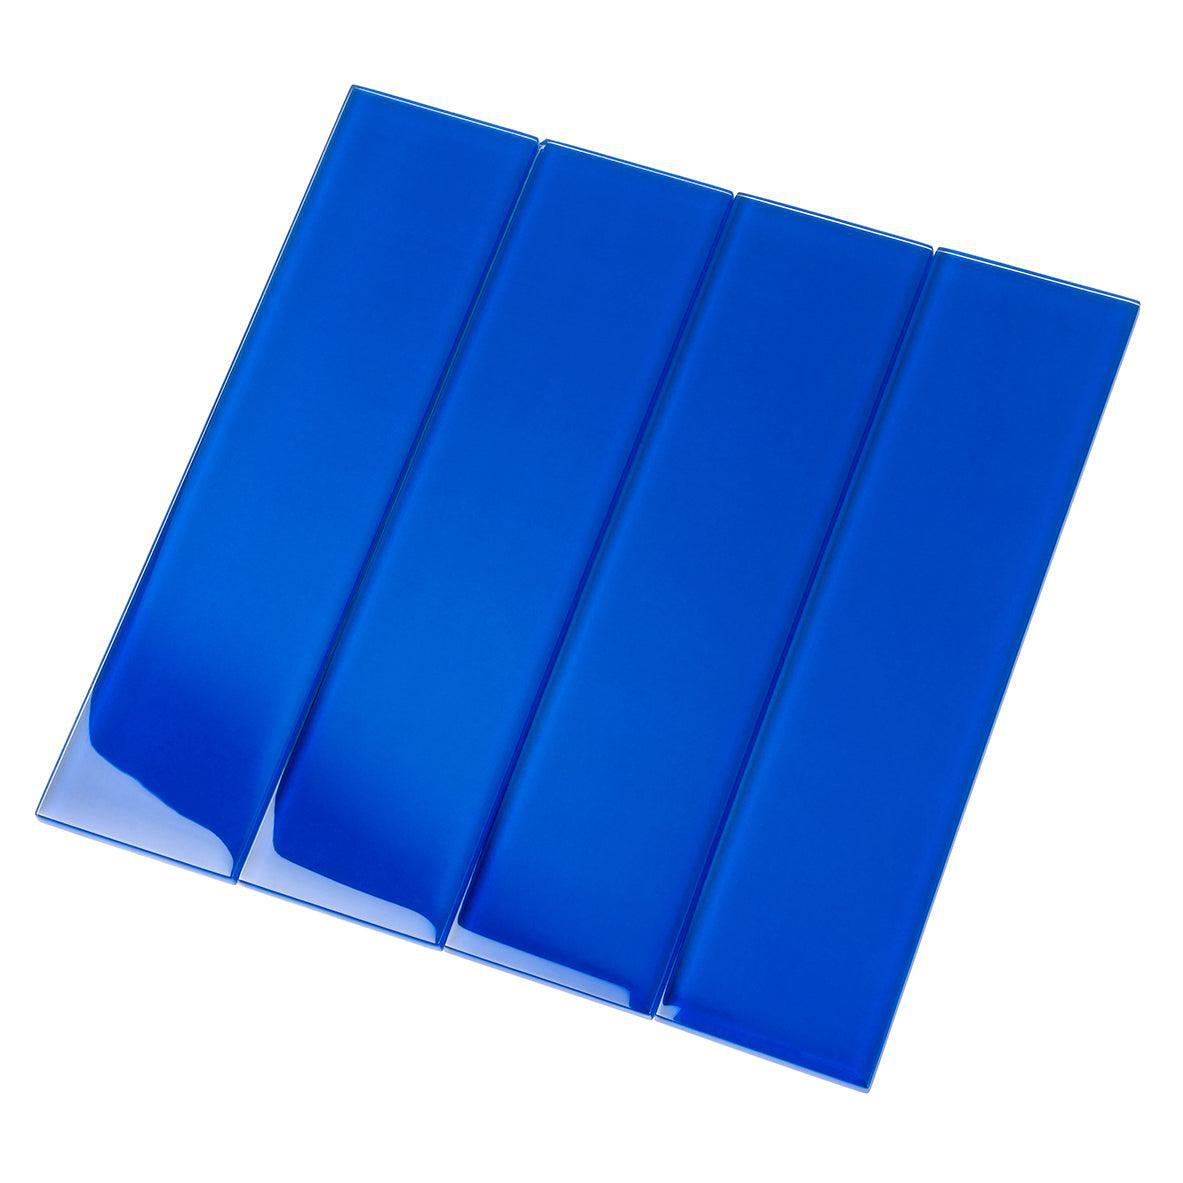 Glacier Cobalt Blue 3X12 Polished Glass Tile